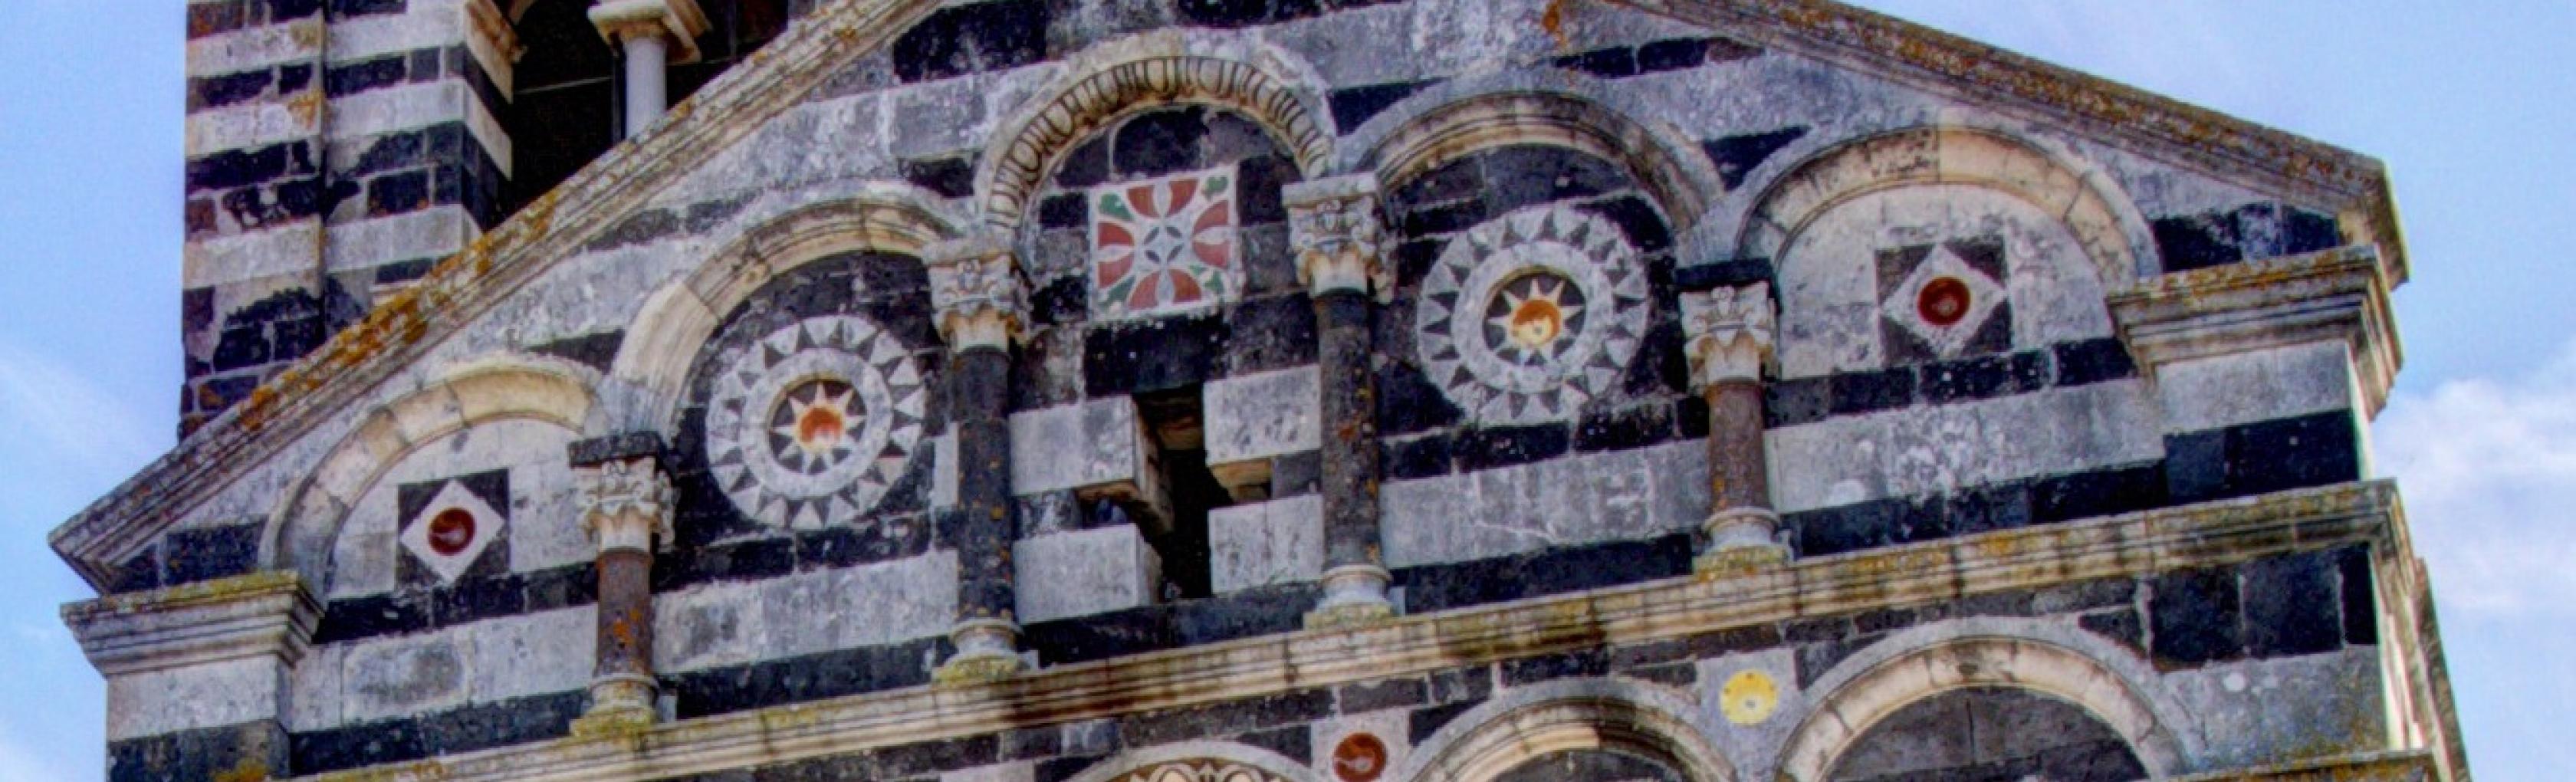 Santissima Trinita di Saccargia - Codrongianos